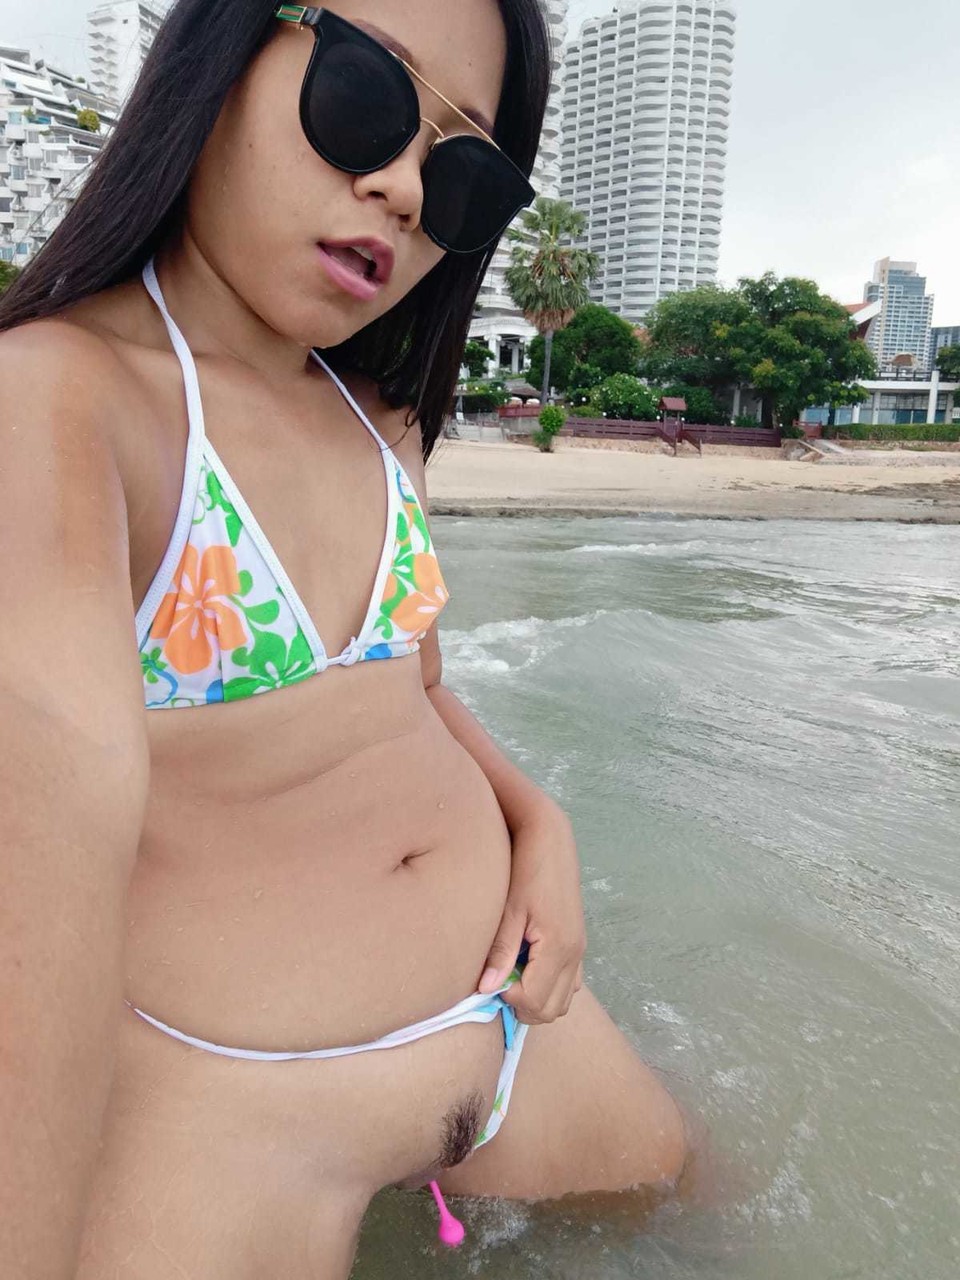 Gorgeous Asian amateur Kiki Asia shows her hot ass in a bikini at the beach Porno-Foto #425545190 | TukTuk Thailand Pics, Kiki Asia, Thai, Mobiler Porno